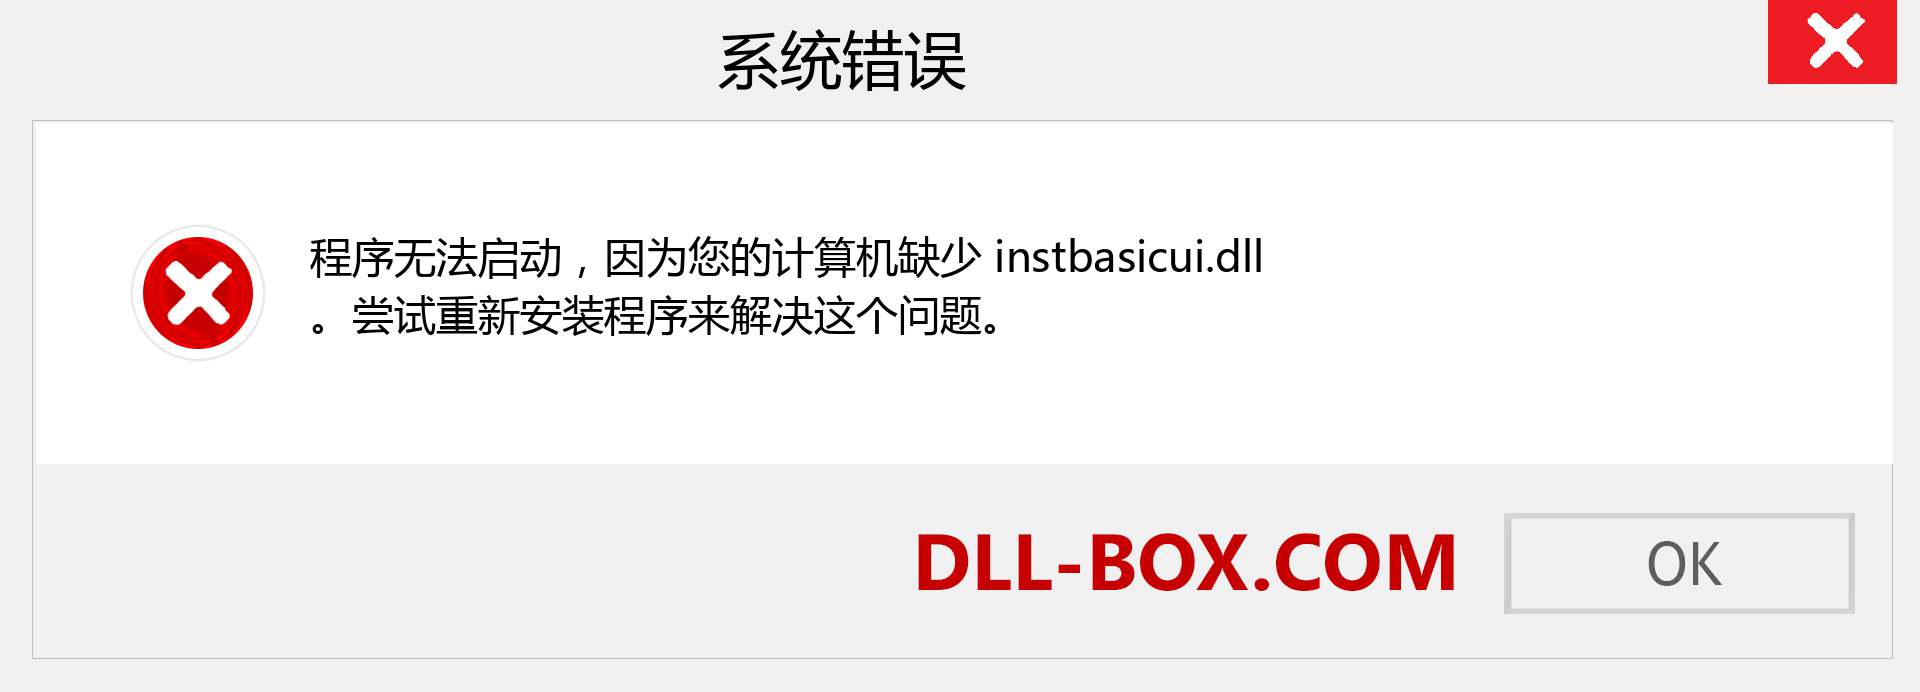 instbasicui.dll 文件丢失？。 适用于 Windows 7、8、10 的下载 - 修复 Windows、照片、图像上的 instbasicui dll 丢失错误